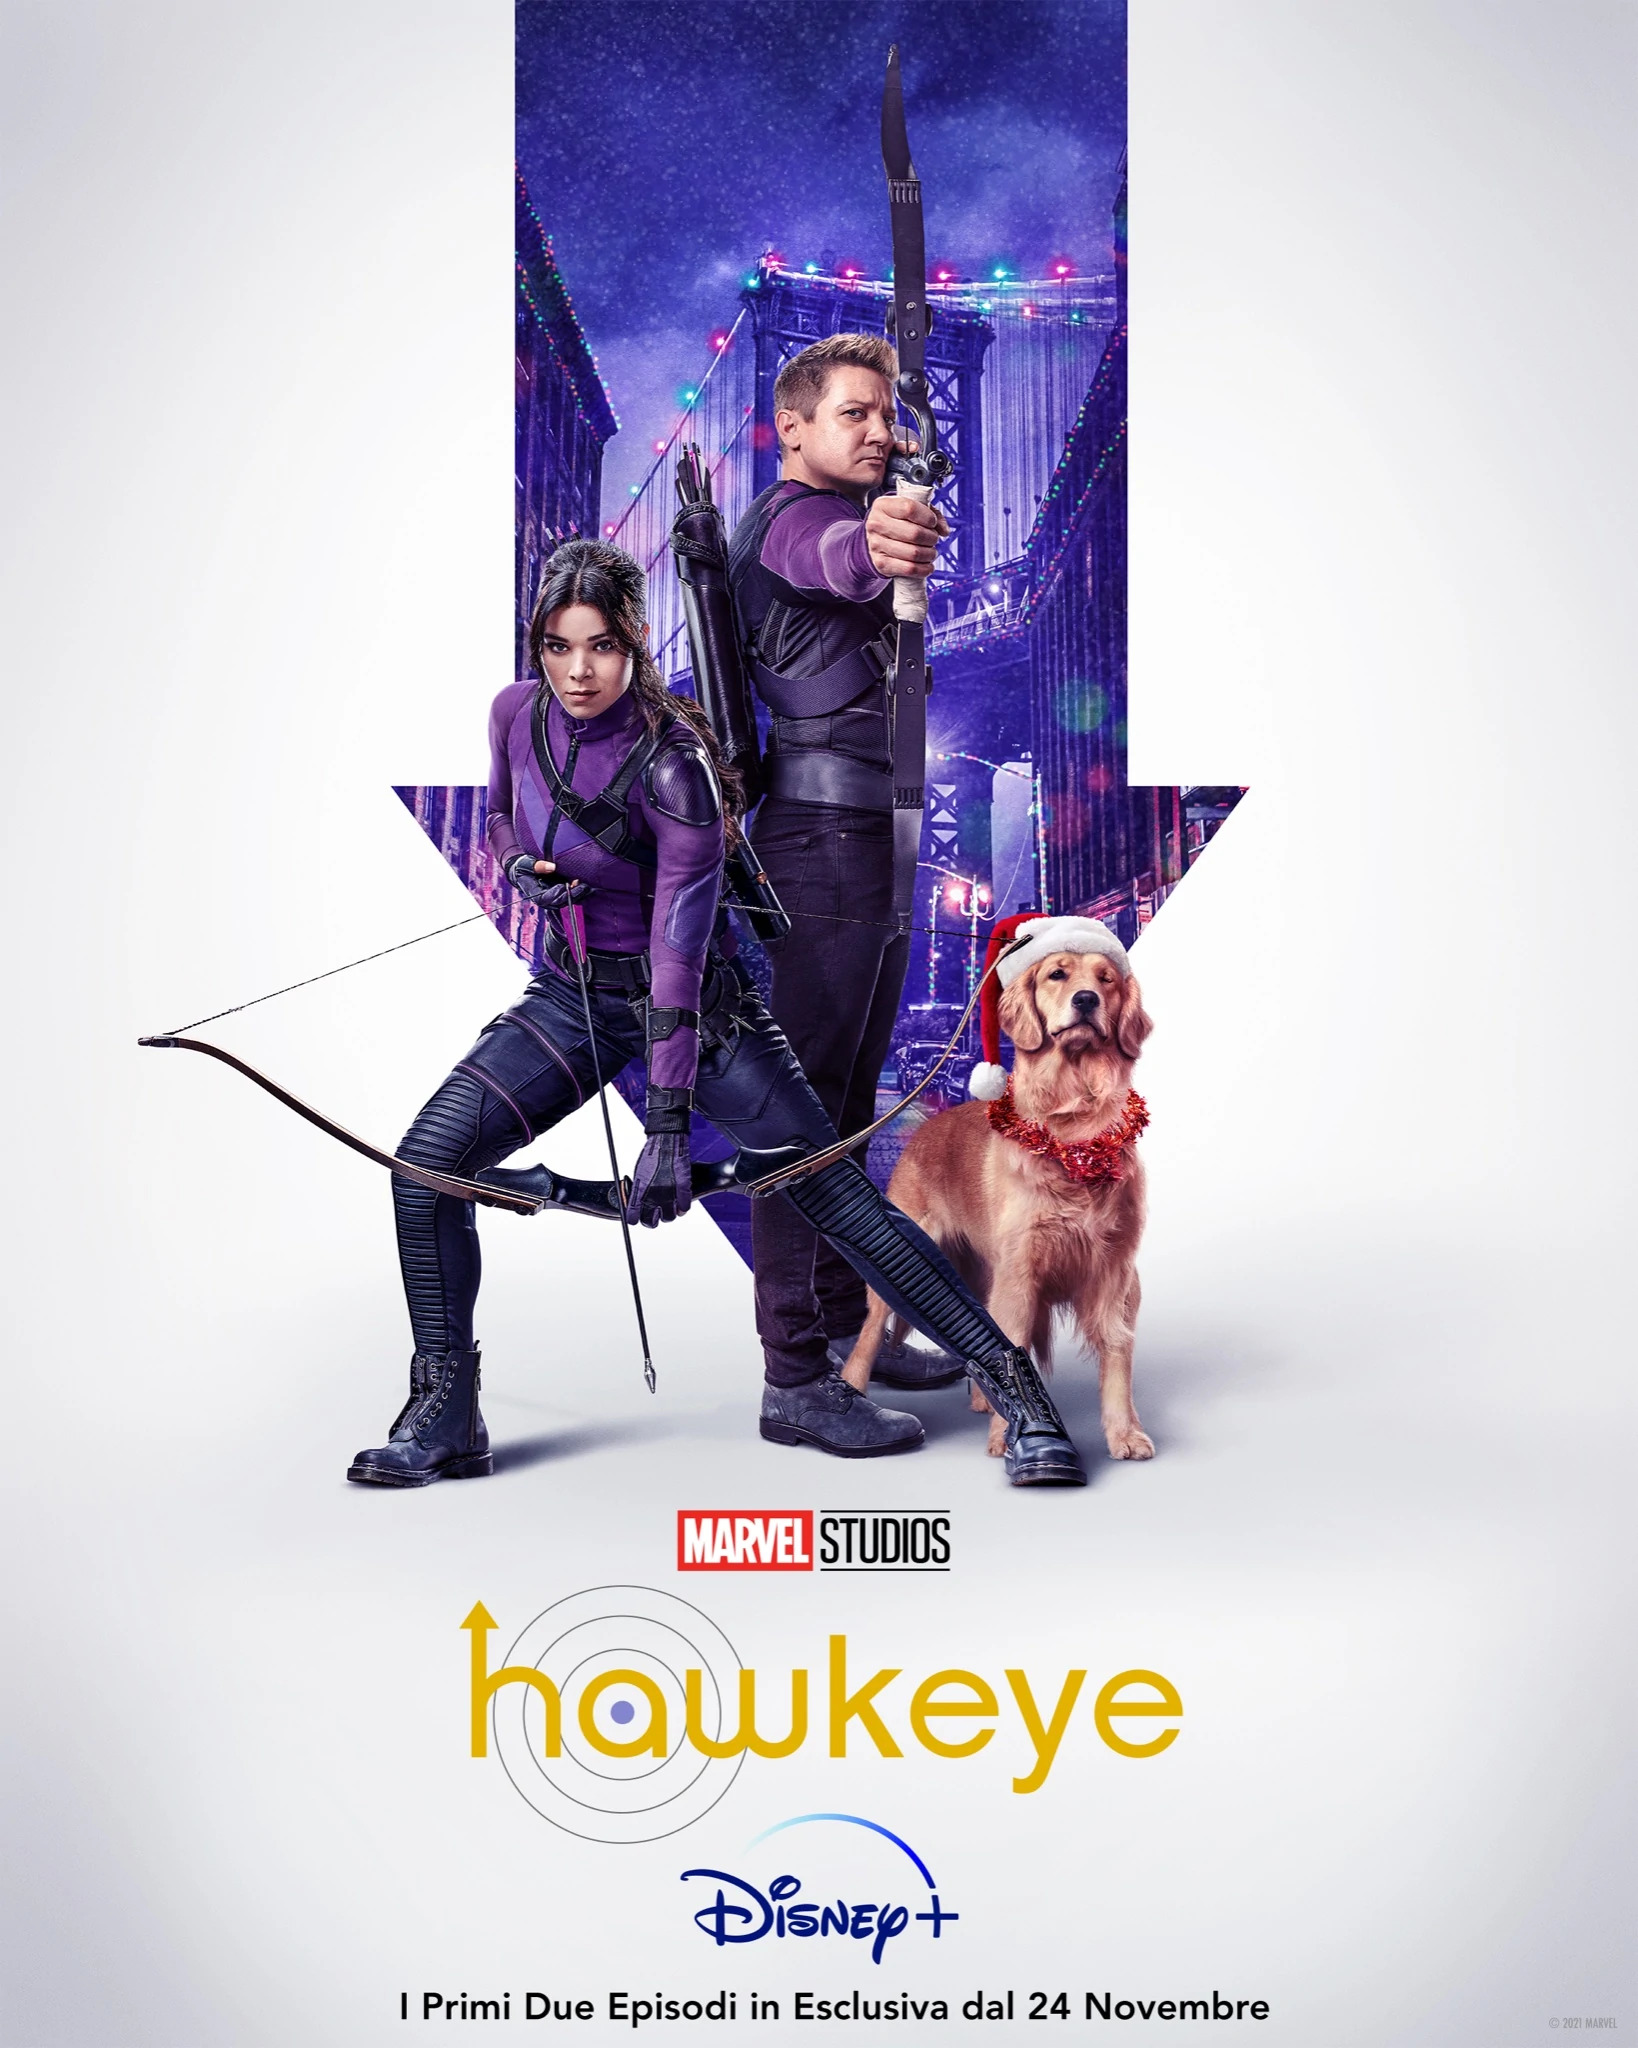 Hawkeye score Rotten Tomatoes